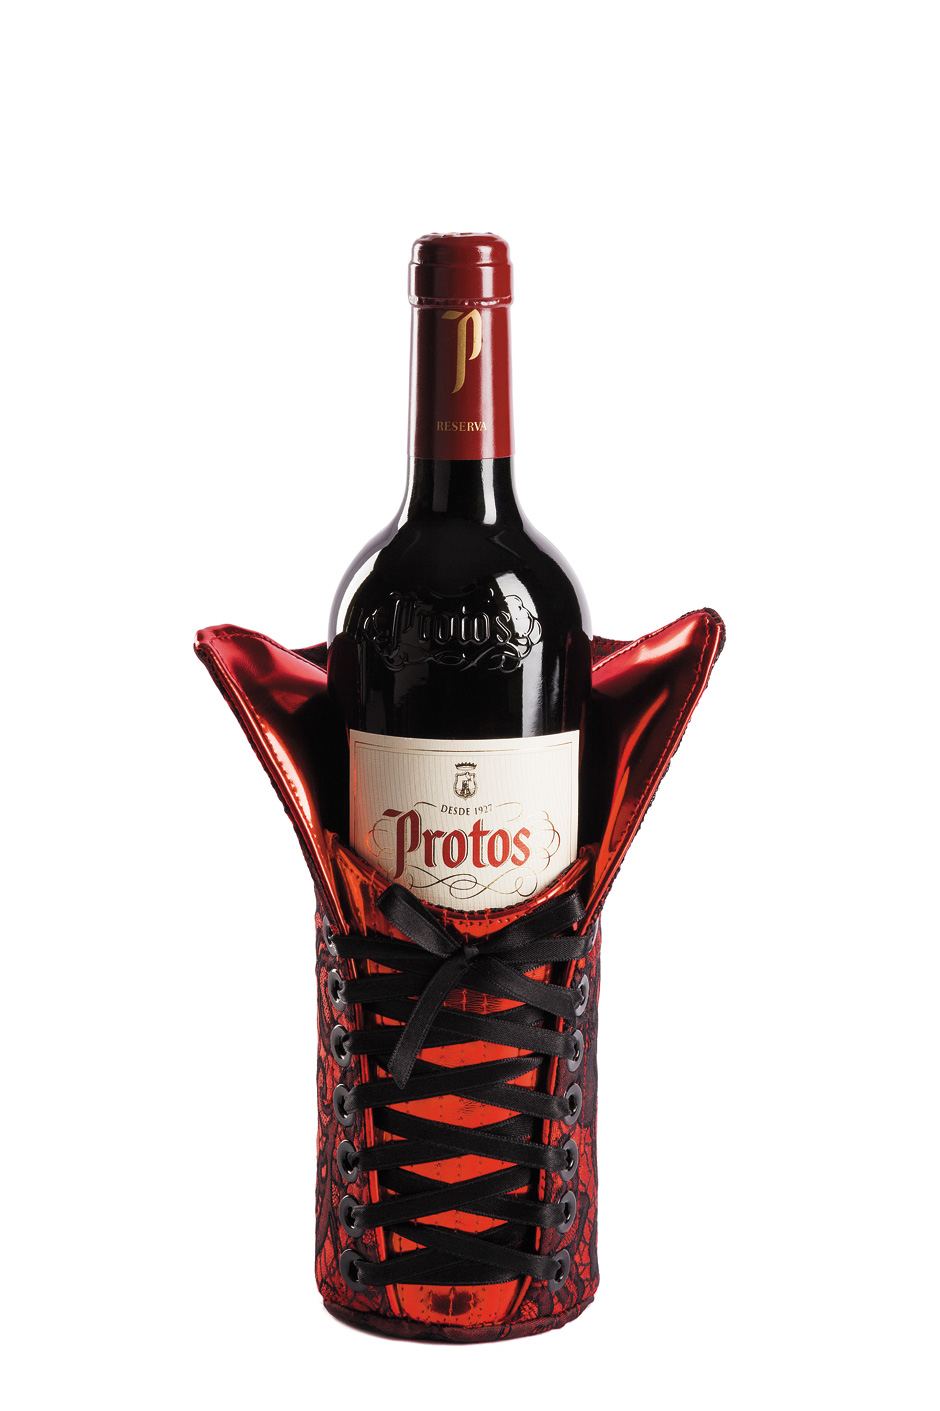 La confezione natalizia del vino Protos Reserva è stata opera della designer Maya Hansen